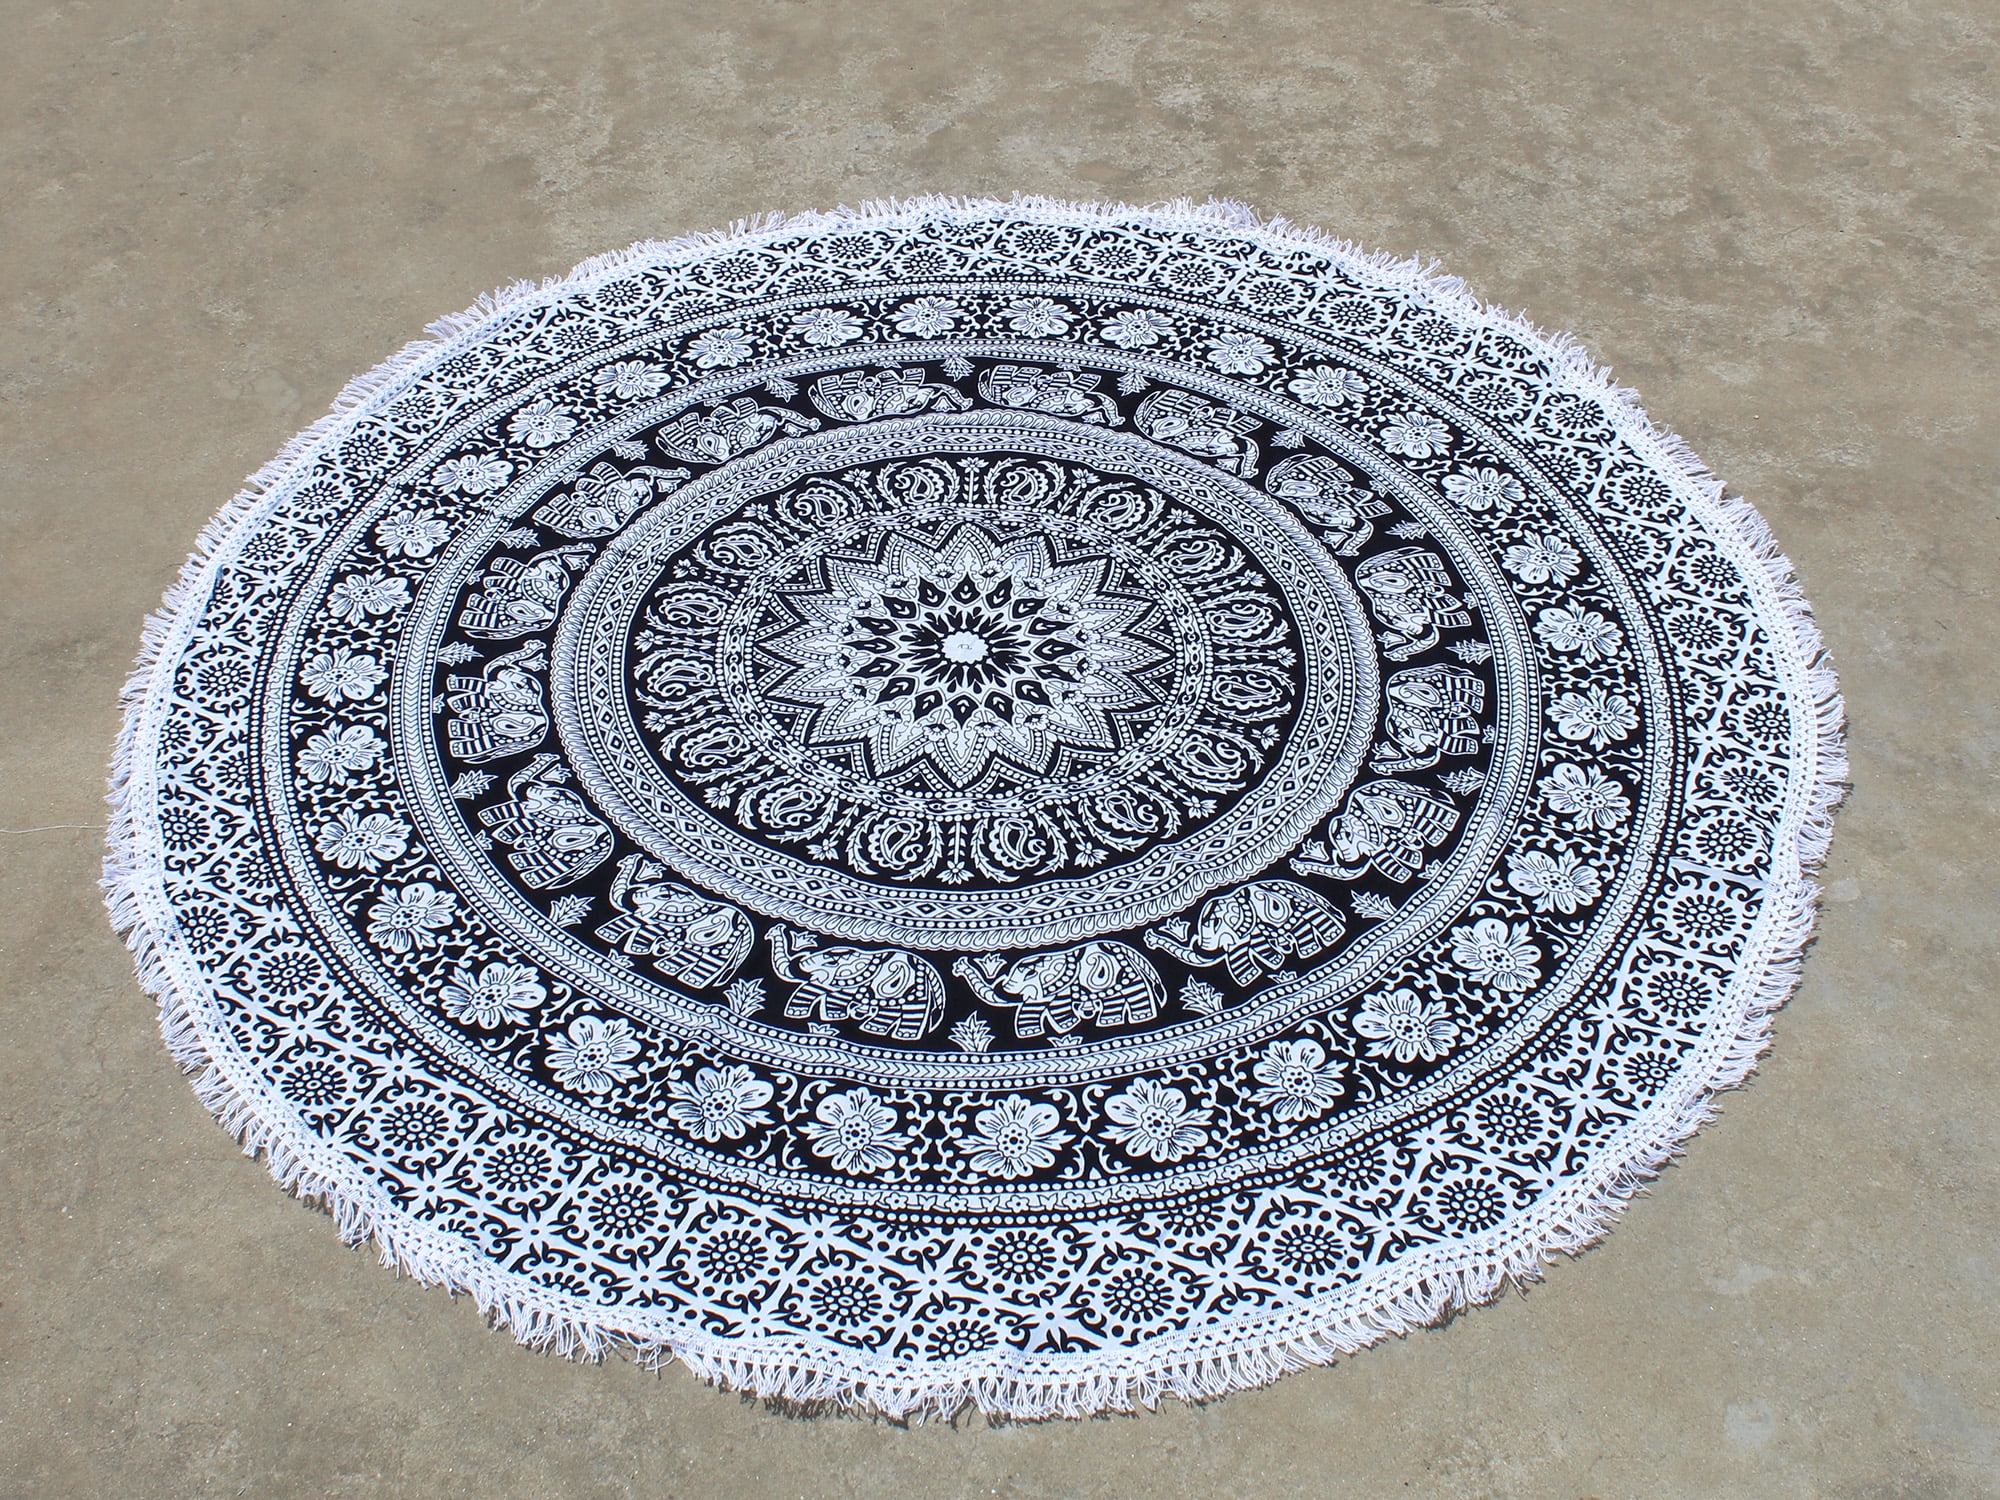 Indian Hippie Home Decor Mandala Queen Round Table Cloth Beach Towel Yoga Mat 